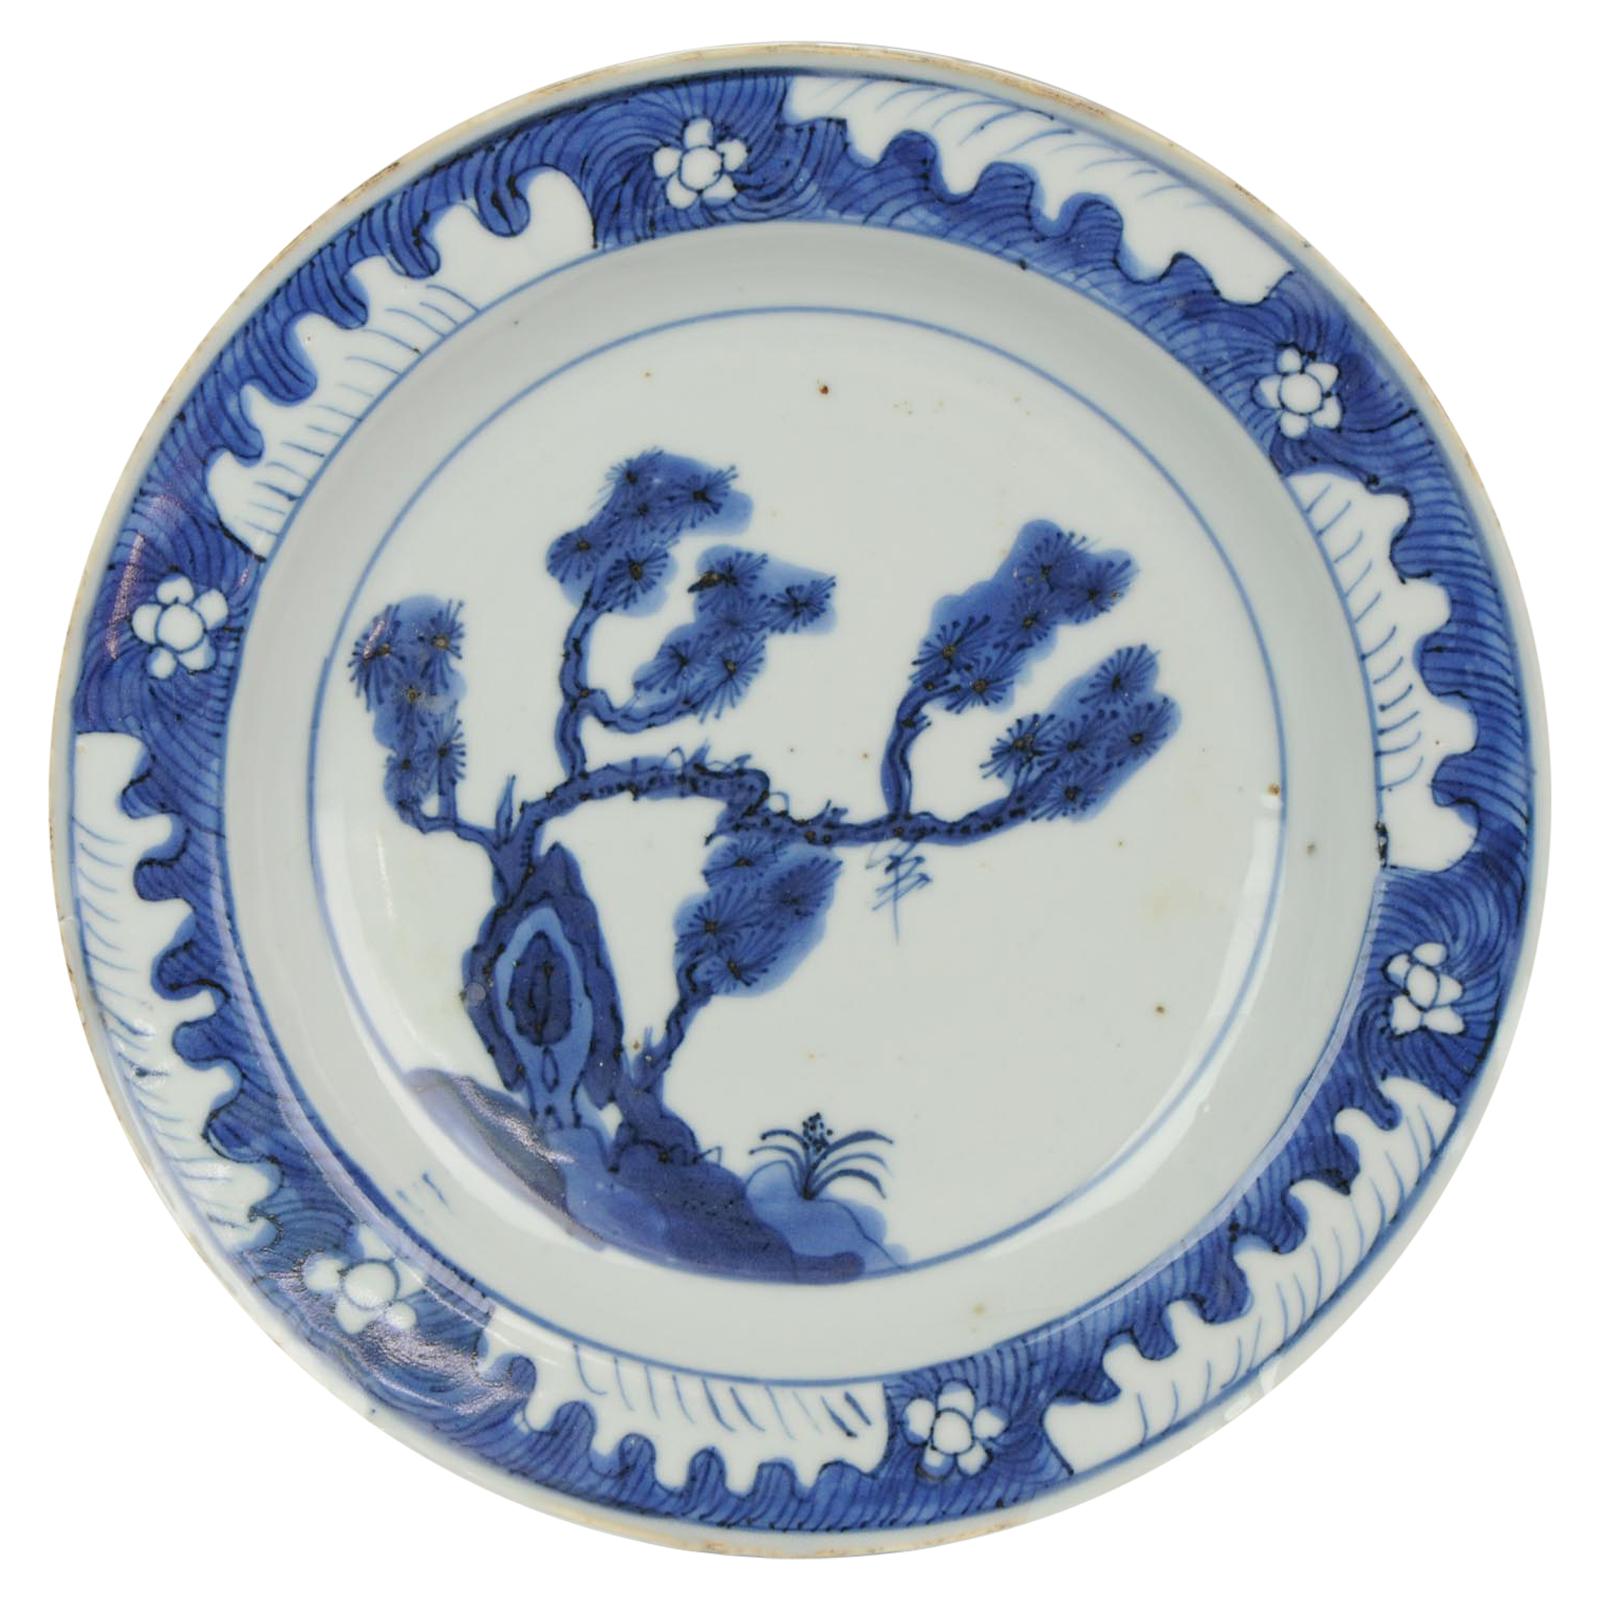 Antique assiette en porcelaine chinoise du 17ème siècle de type Ming/Transitionnel Bleu Tianqi Chongzhen